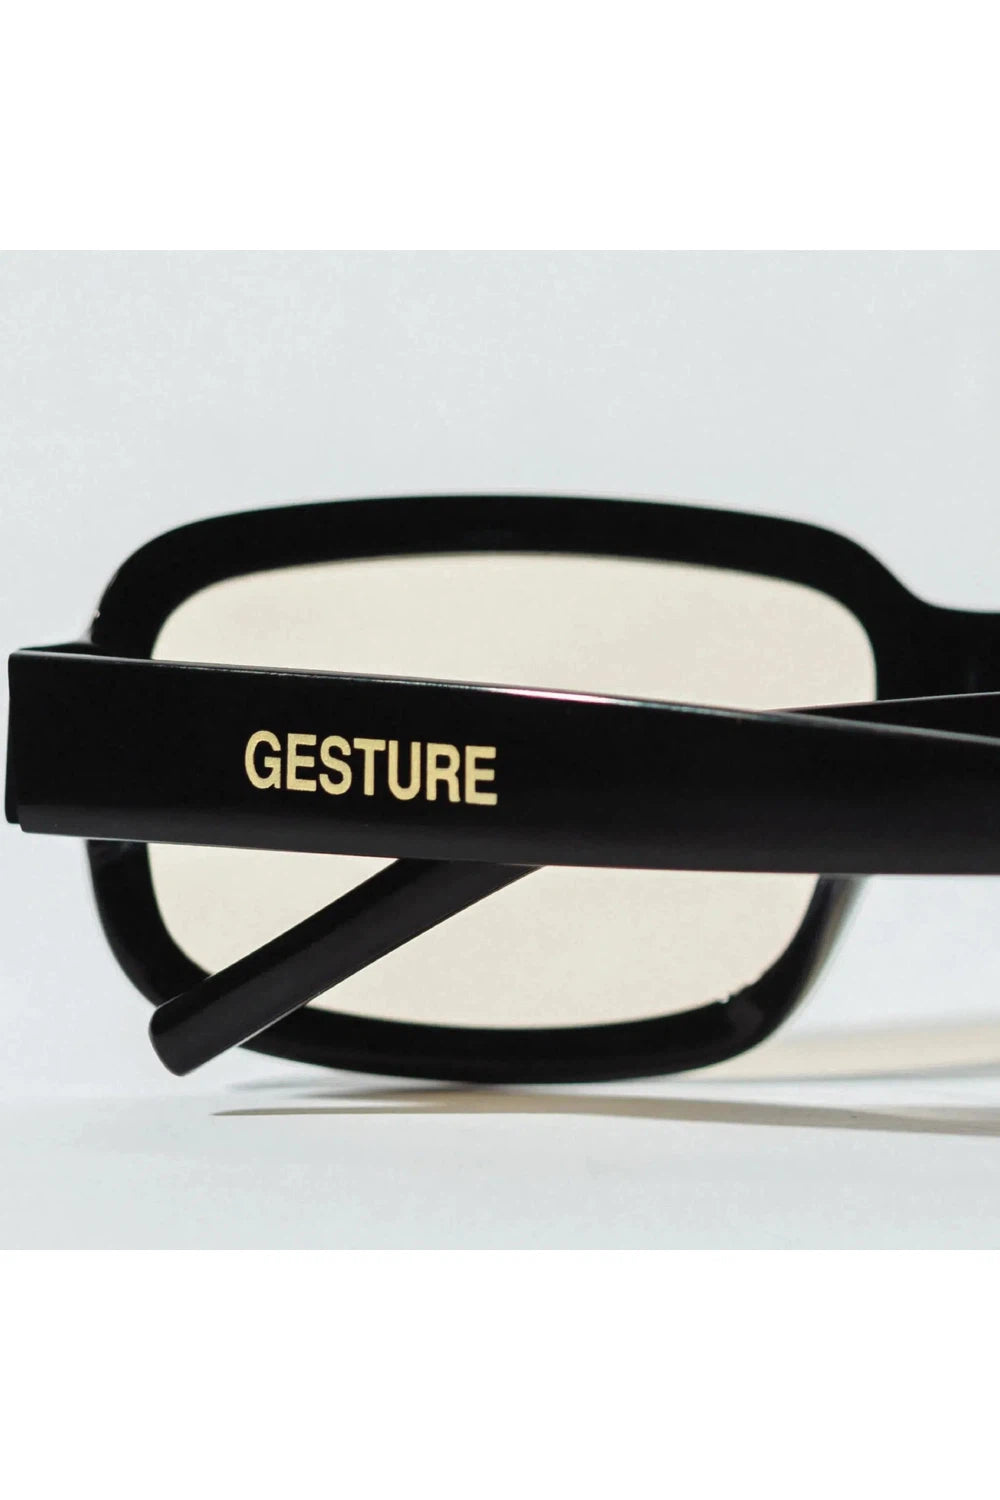 Gesture Eyewear 005 - Black/Sunset | GESTURE EYEWEAR | Mad About The Boy